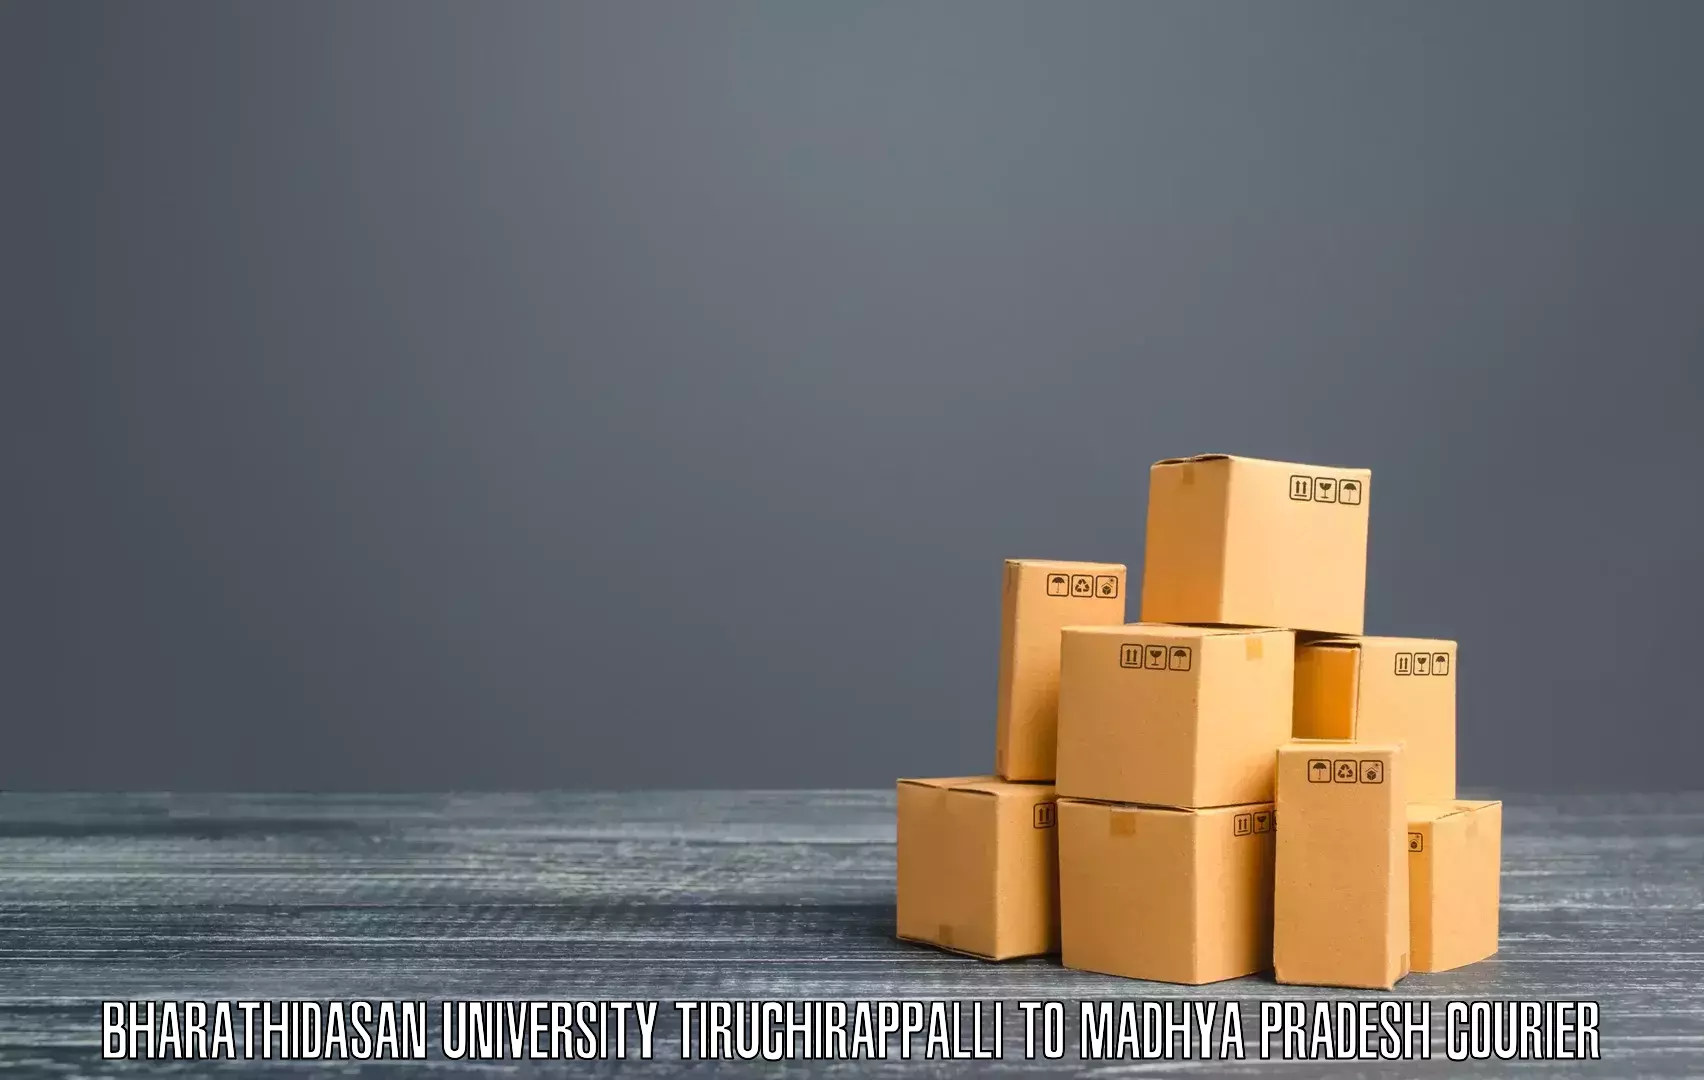 High-capacity shipping options Bharathidasan University Tiruchirappalli to Shujalpur